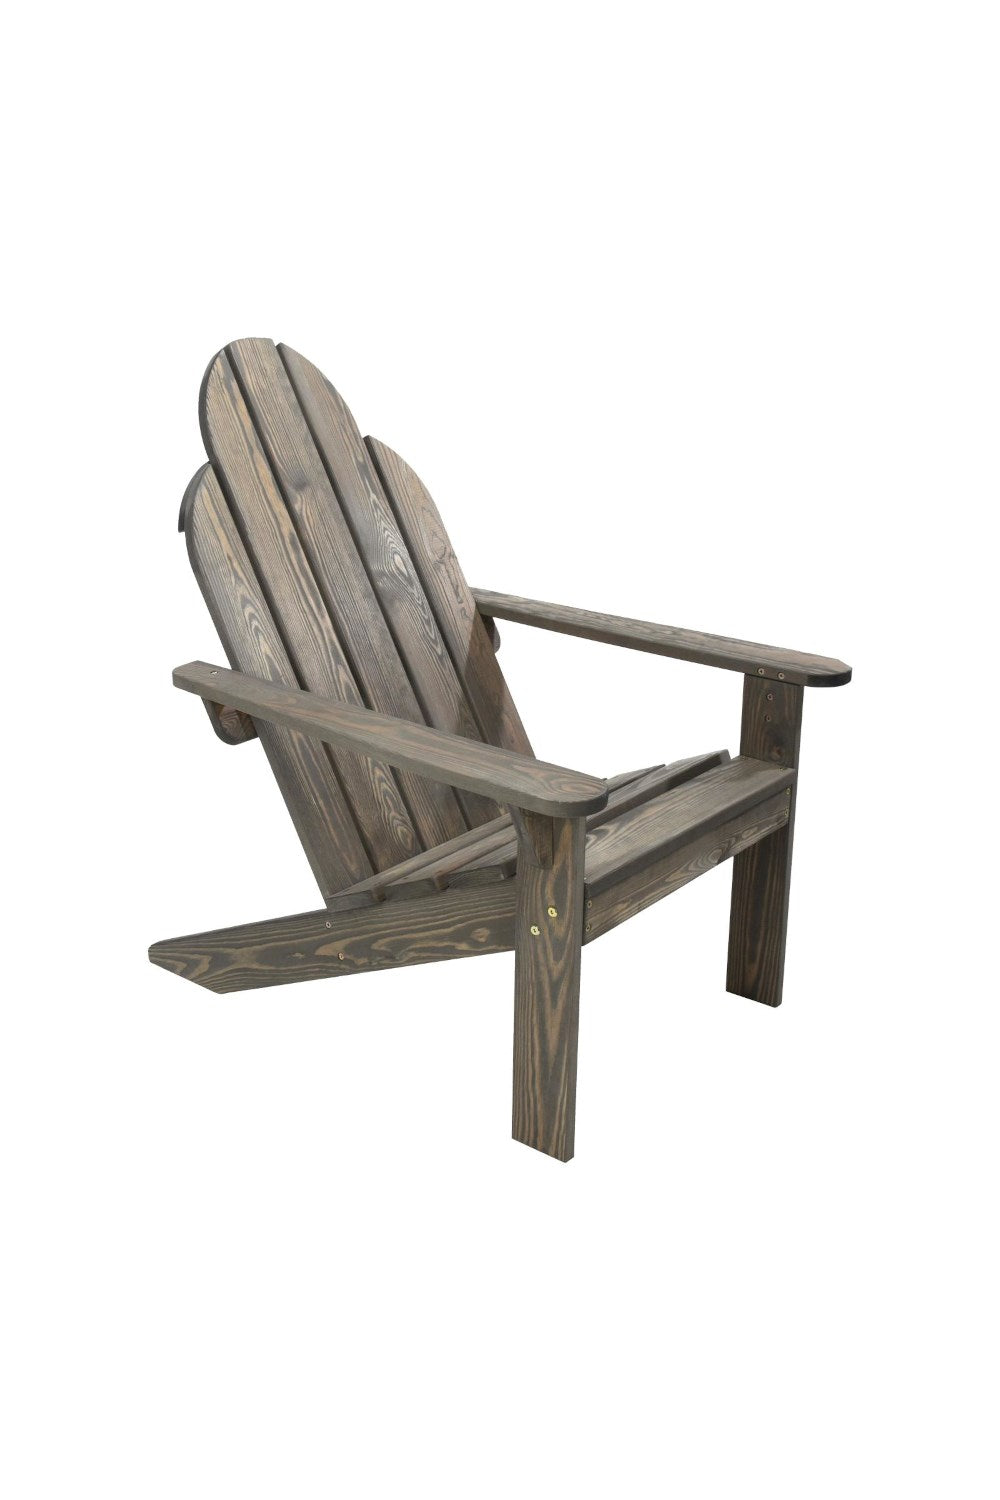 Bata Adirondack Chair Sun Lounger Garden Furniture(Grey Finish)